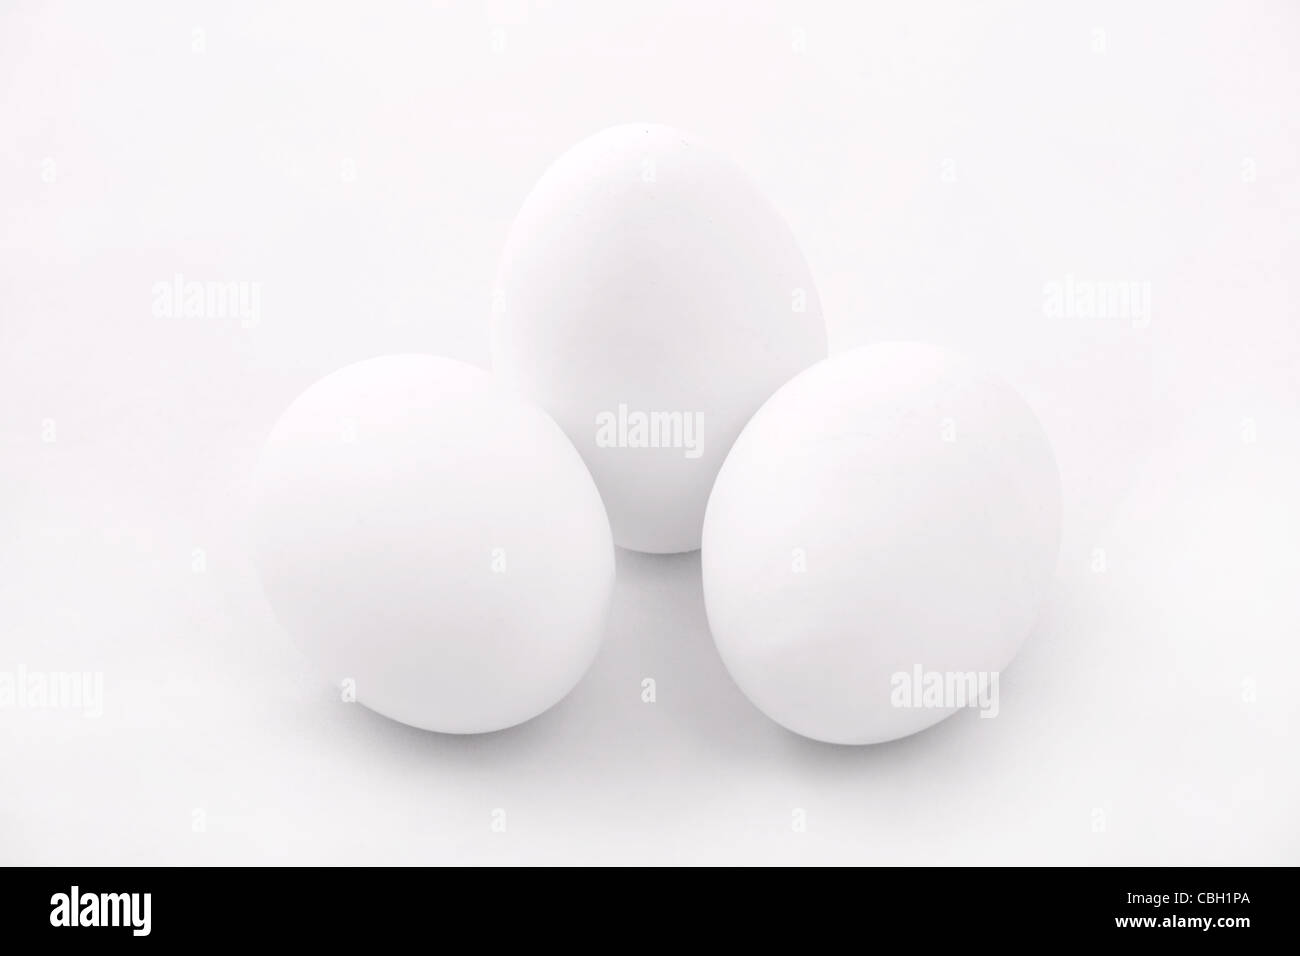 Three eggs on white surface. White on white series. Studio shot. Stock Photo